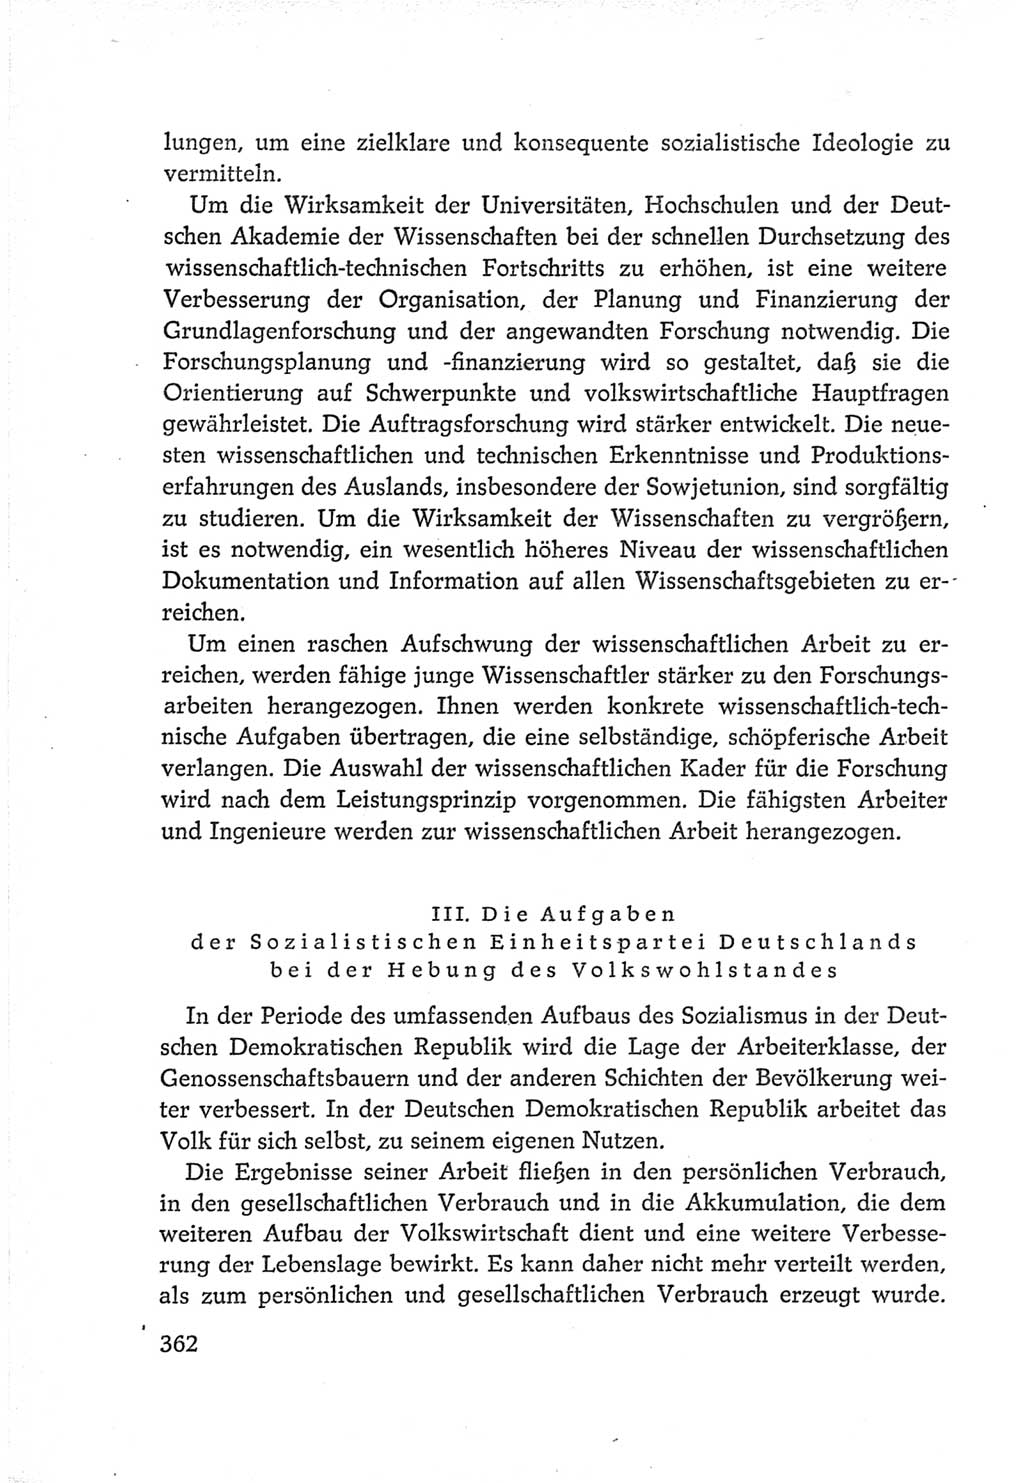 Protokoll der Verhandlungen des Ⅵ. Parteitages der Sozialistischen Einheitspartei Deutschlands (SED) [Deutsche Demokratische Republik (DDR)] 1963, Band Ⅳ, Seite 362 (Prot. Verh. Ⅵ. PT SED DDR 1963, Bd. Ⅳ, S. 362)